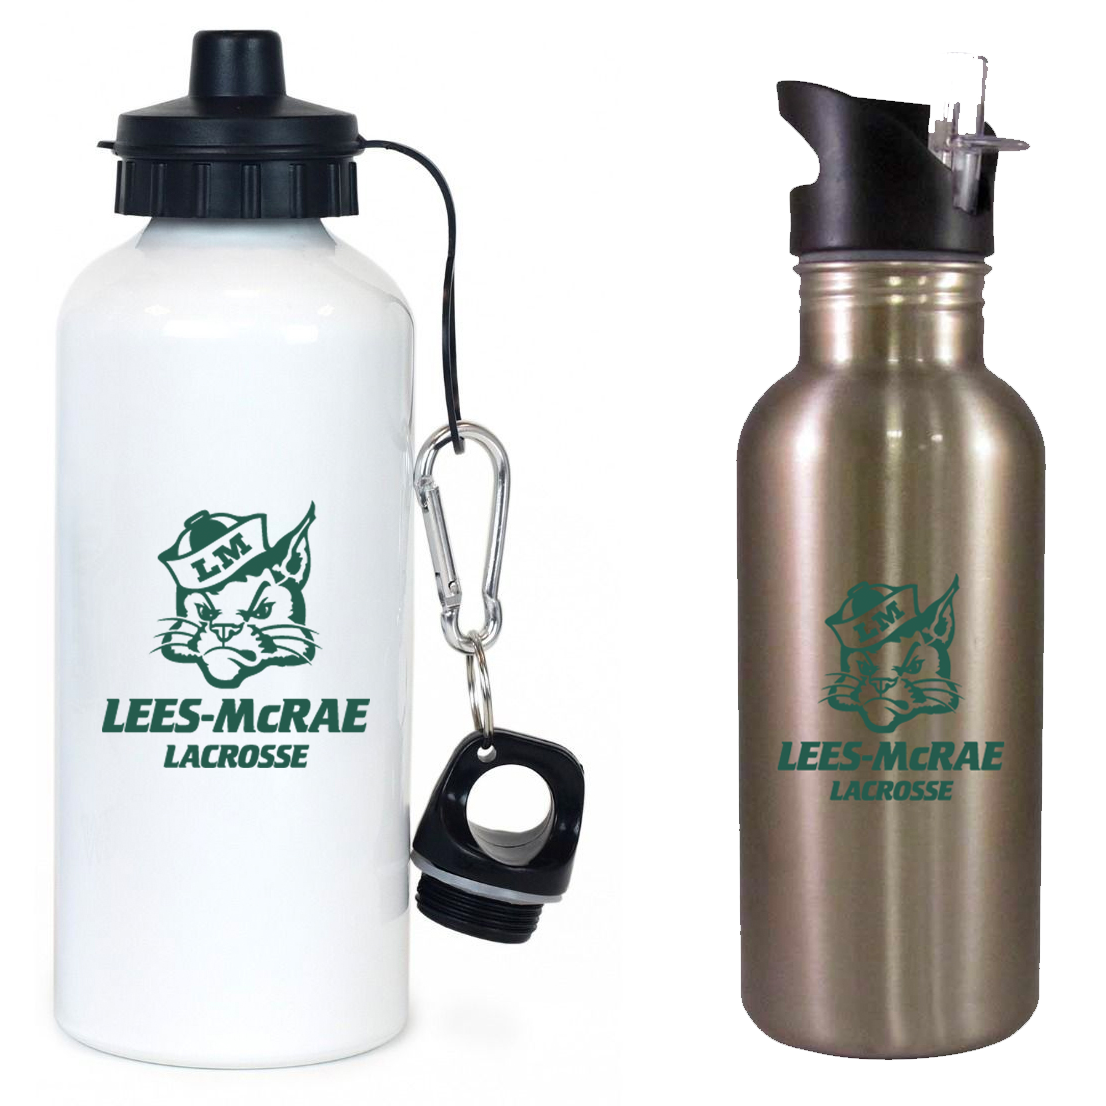 LMC Men's Lacrosse Team Water Bottle